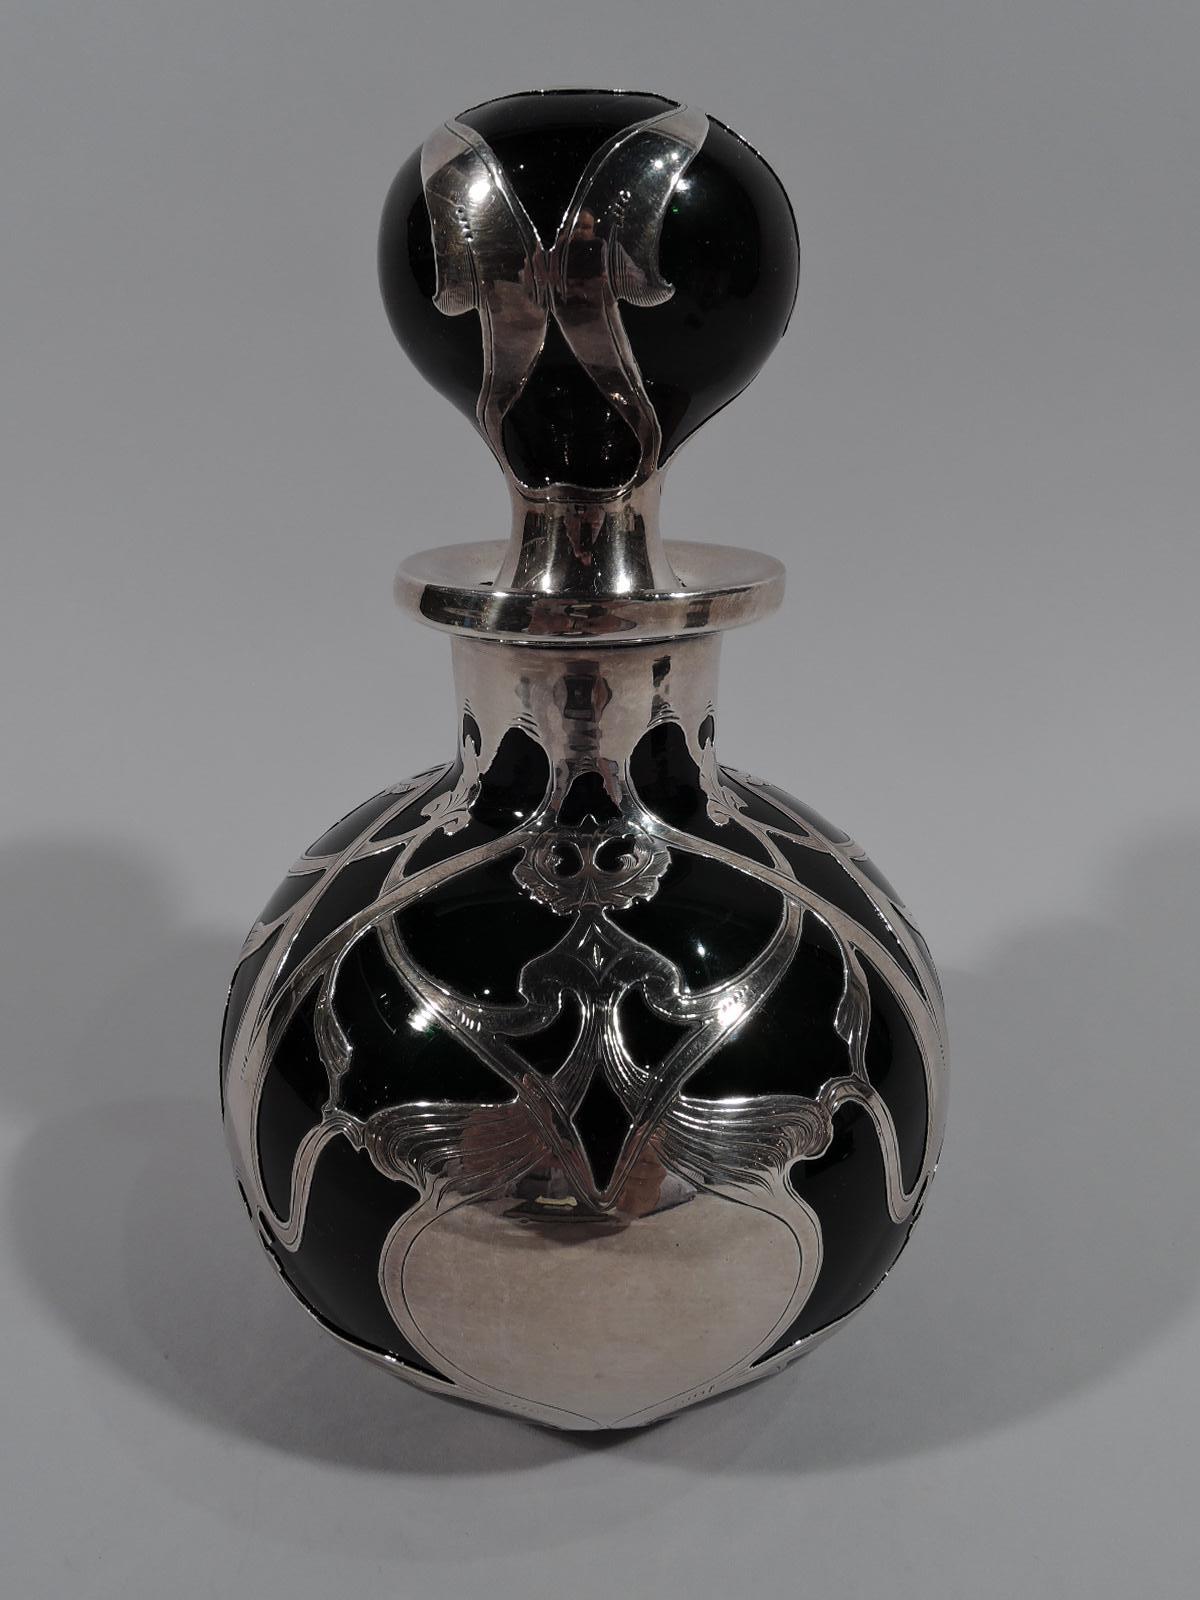 Grand parfum en verre Art Nouveau du début du siècle avec un recouvrement en argent gravé. Fabriqué par Gorham à Providence. Globulaire avec un bord évasé. Bouchon à bille avec bouchon court. Rouleaux d'argent lâches et entrelacés avec des têtes de